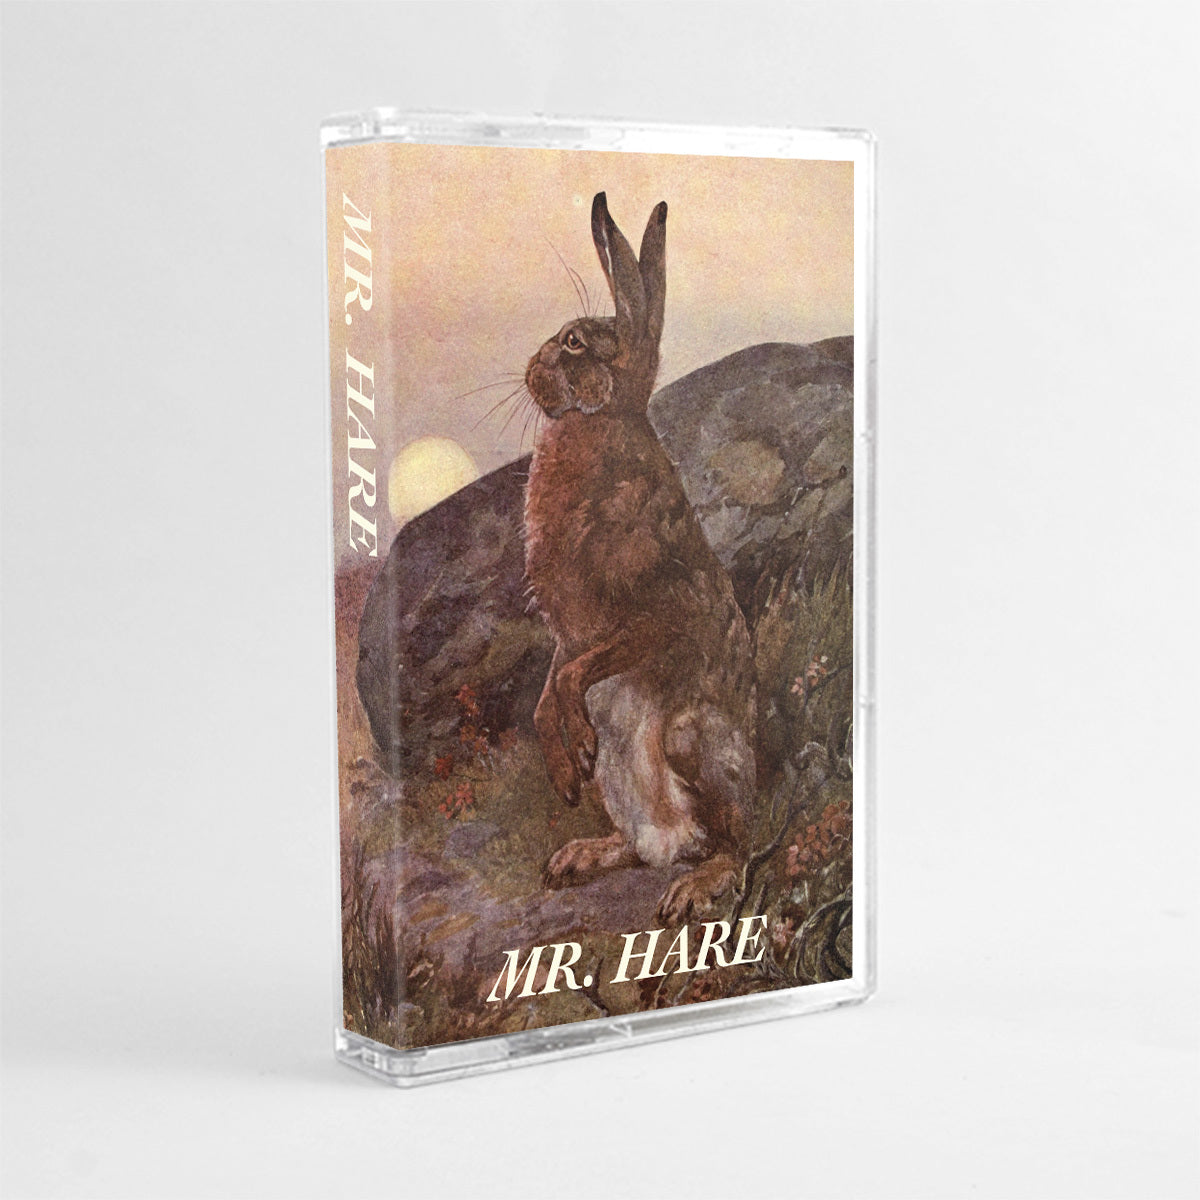 Mr. Hare - Volume 1&2 cassette